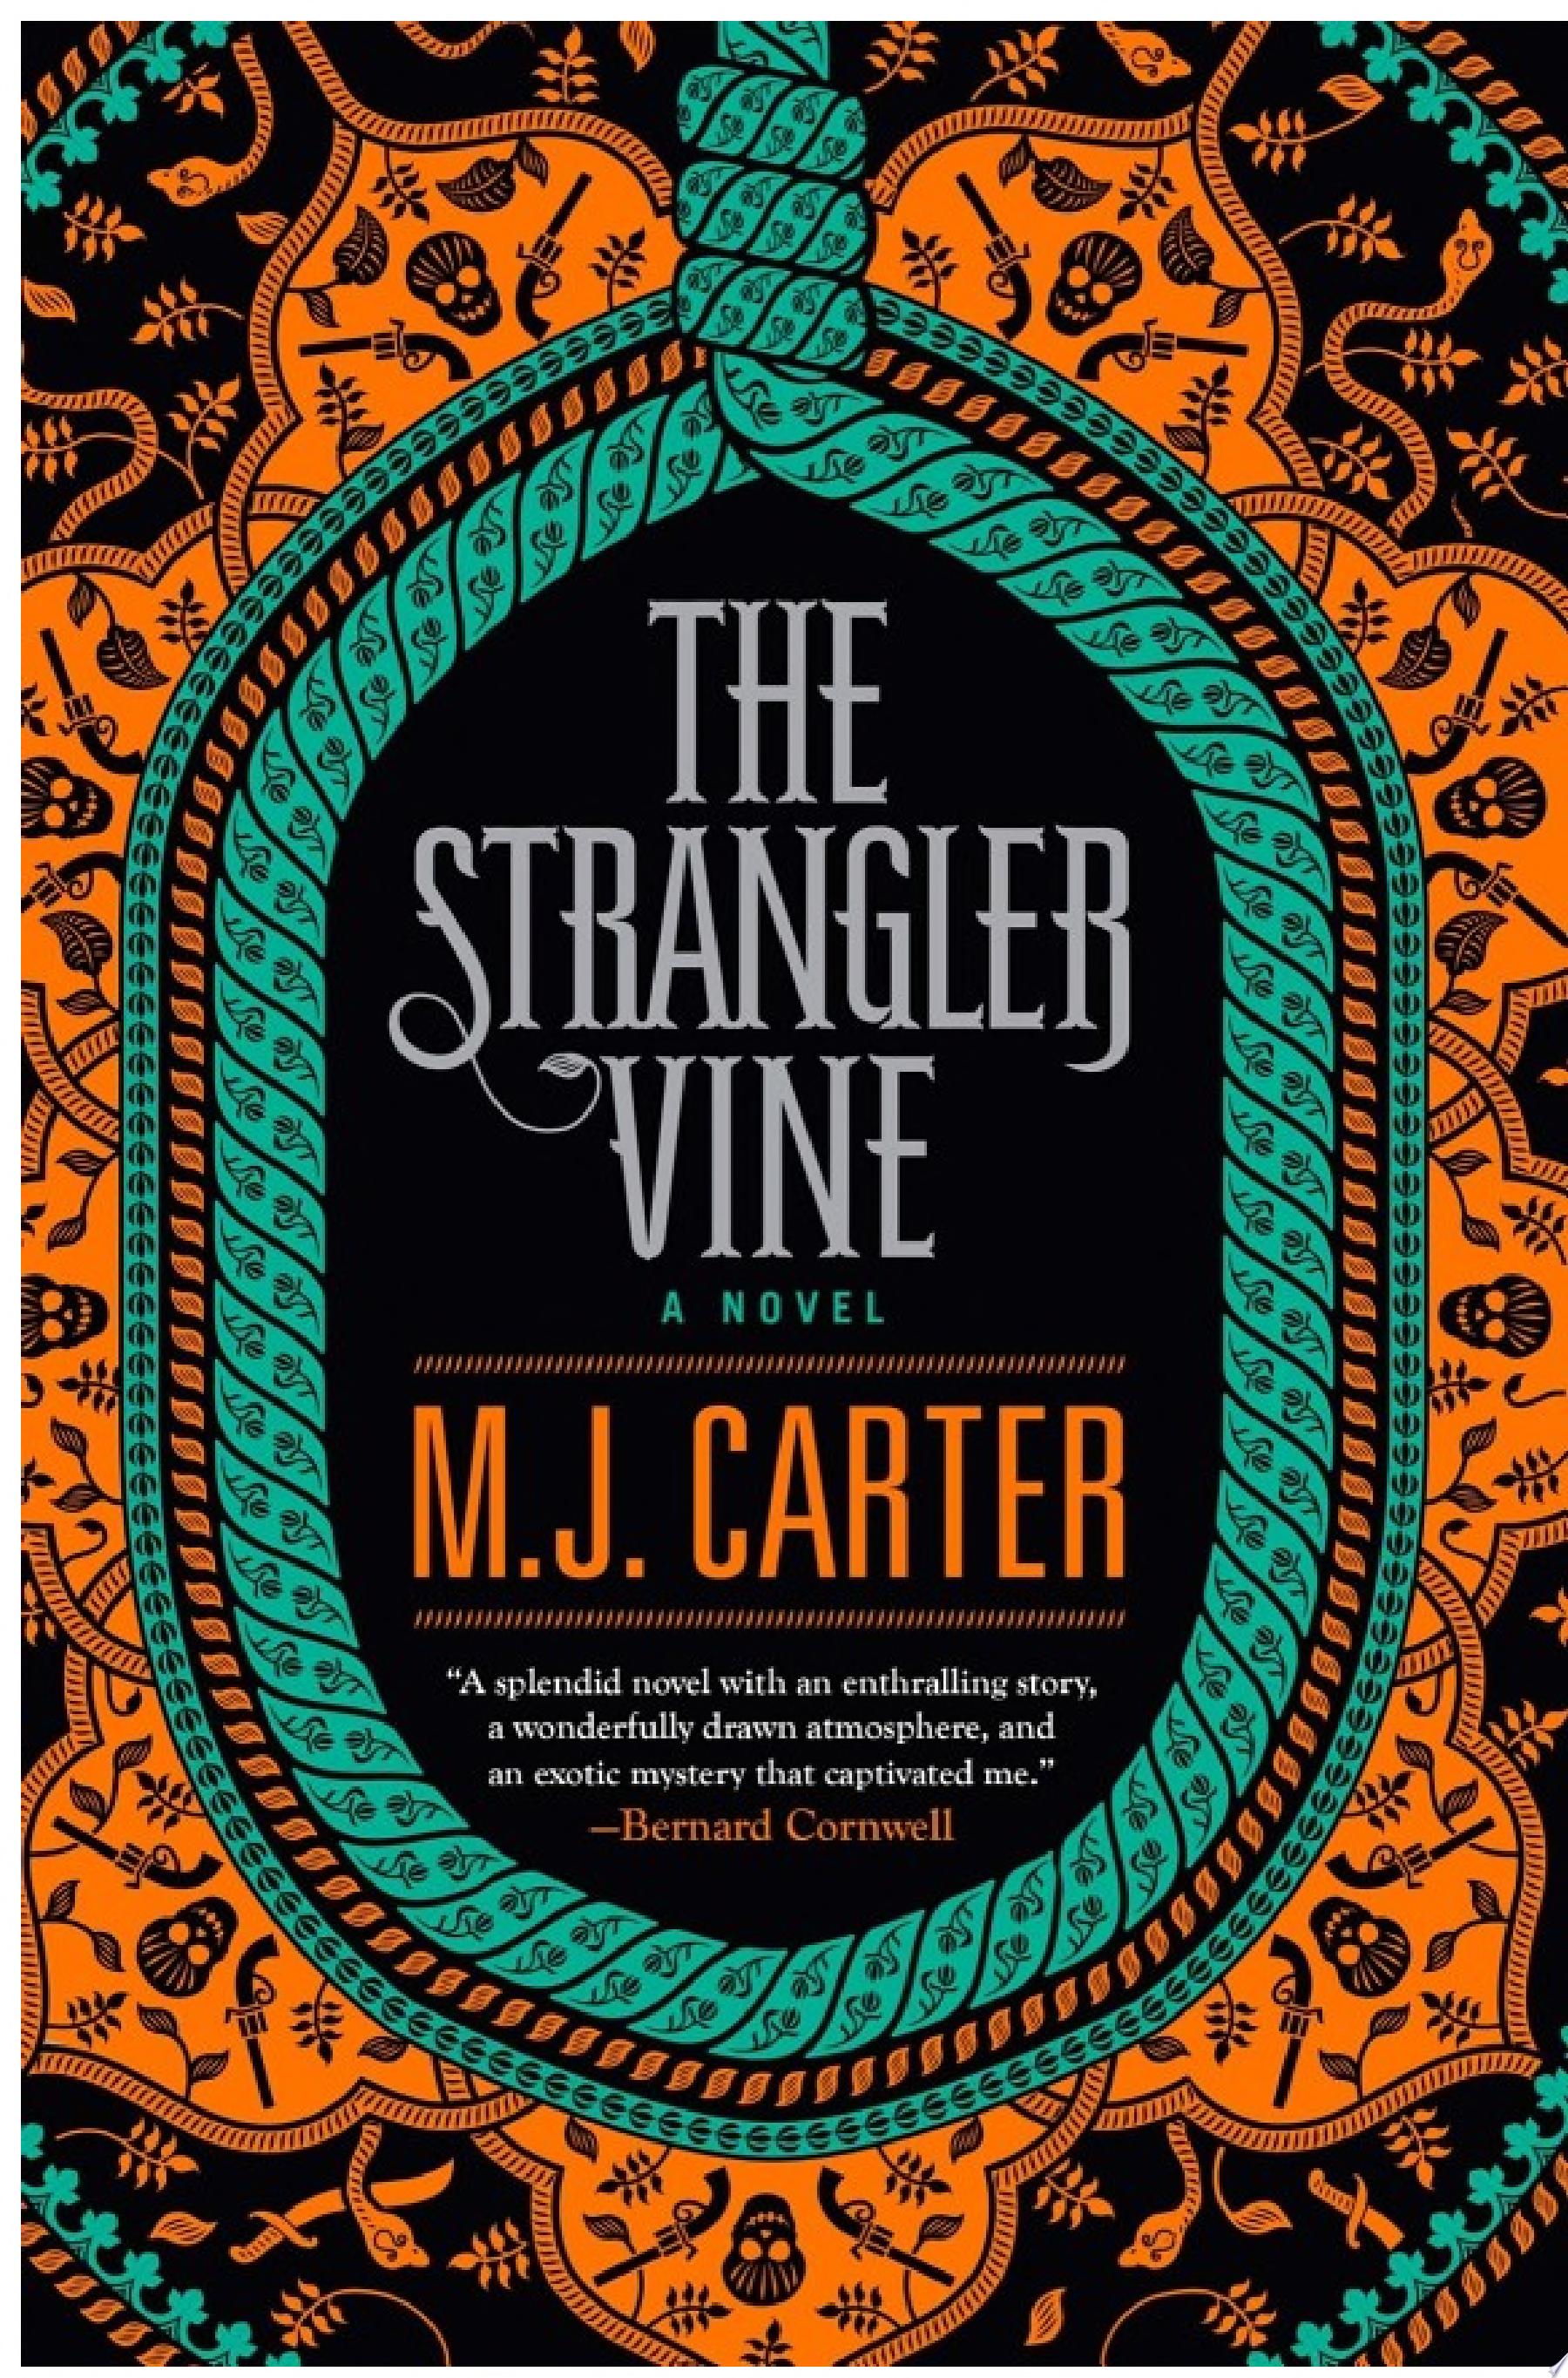 Image for "The Strangler Vine"